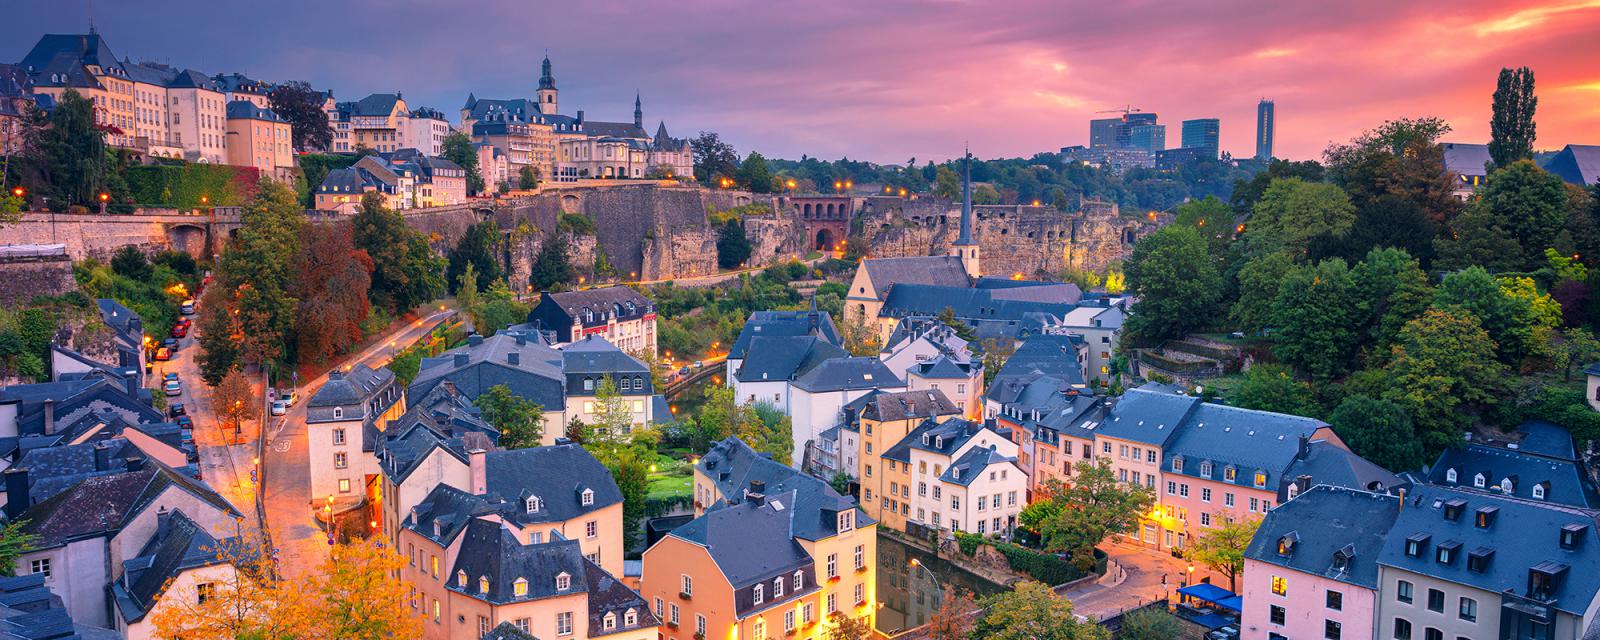 Inspiratie voor je stedentrip naar Luxemburg 